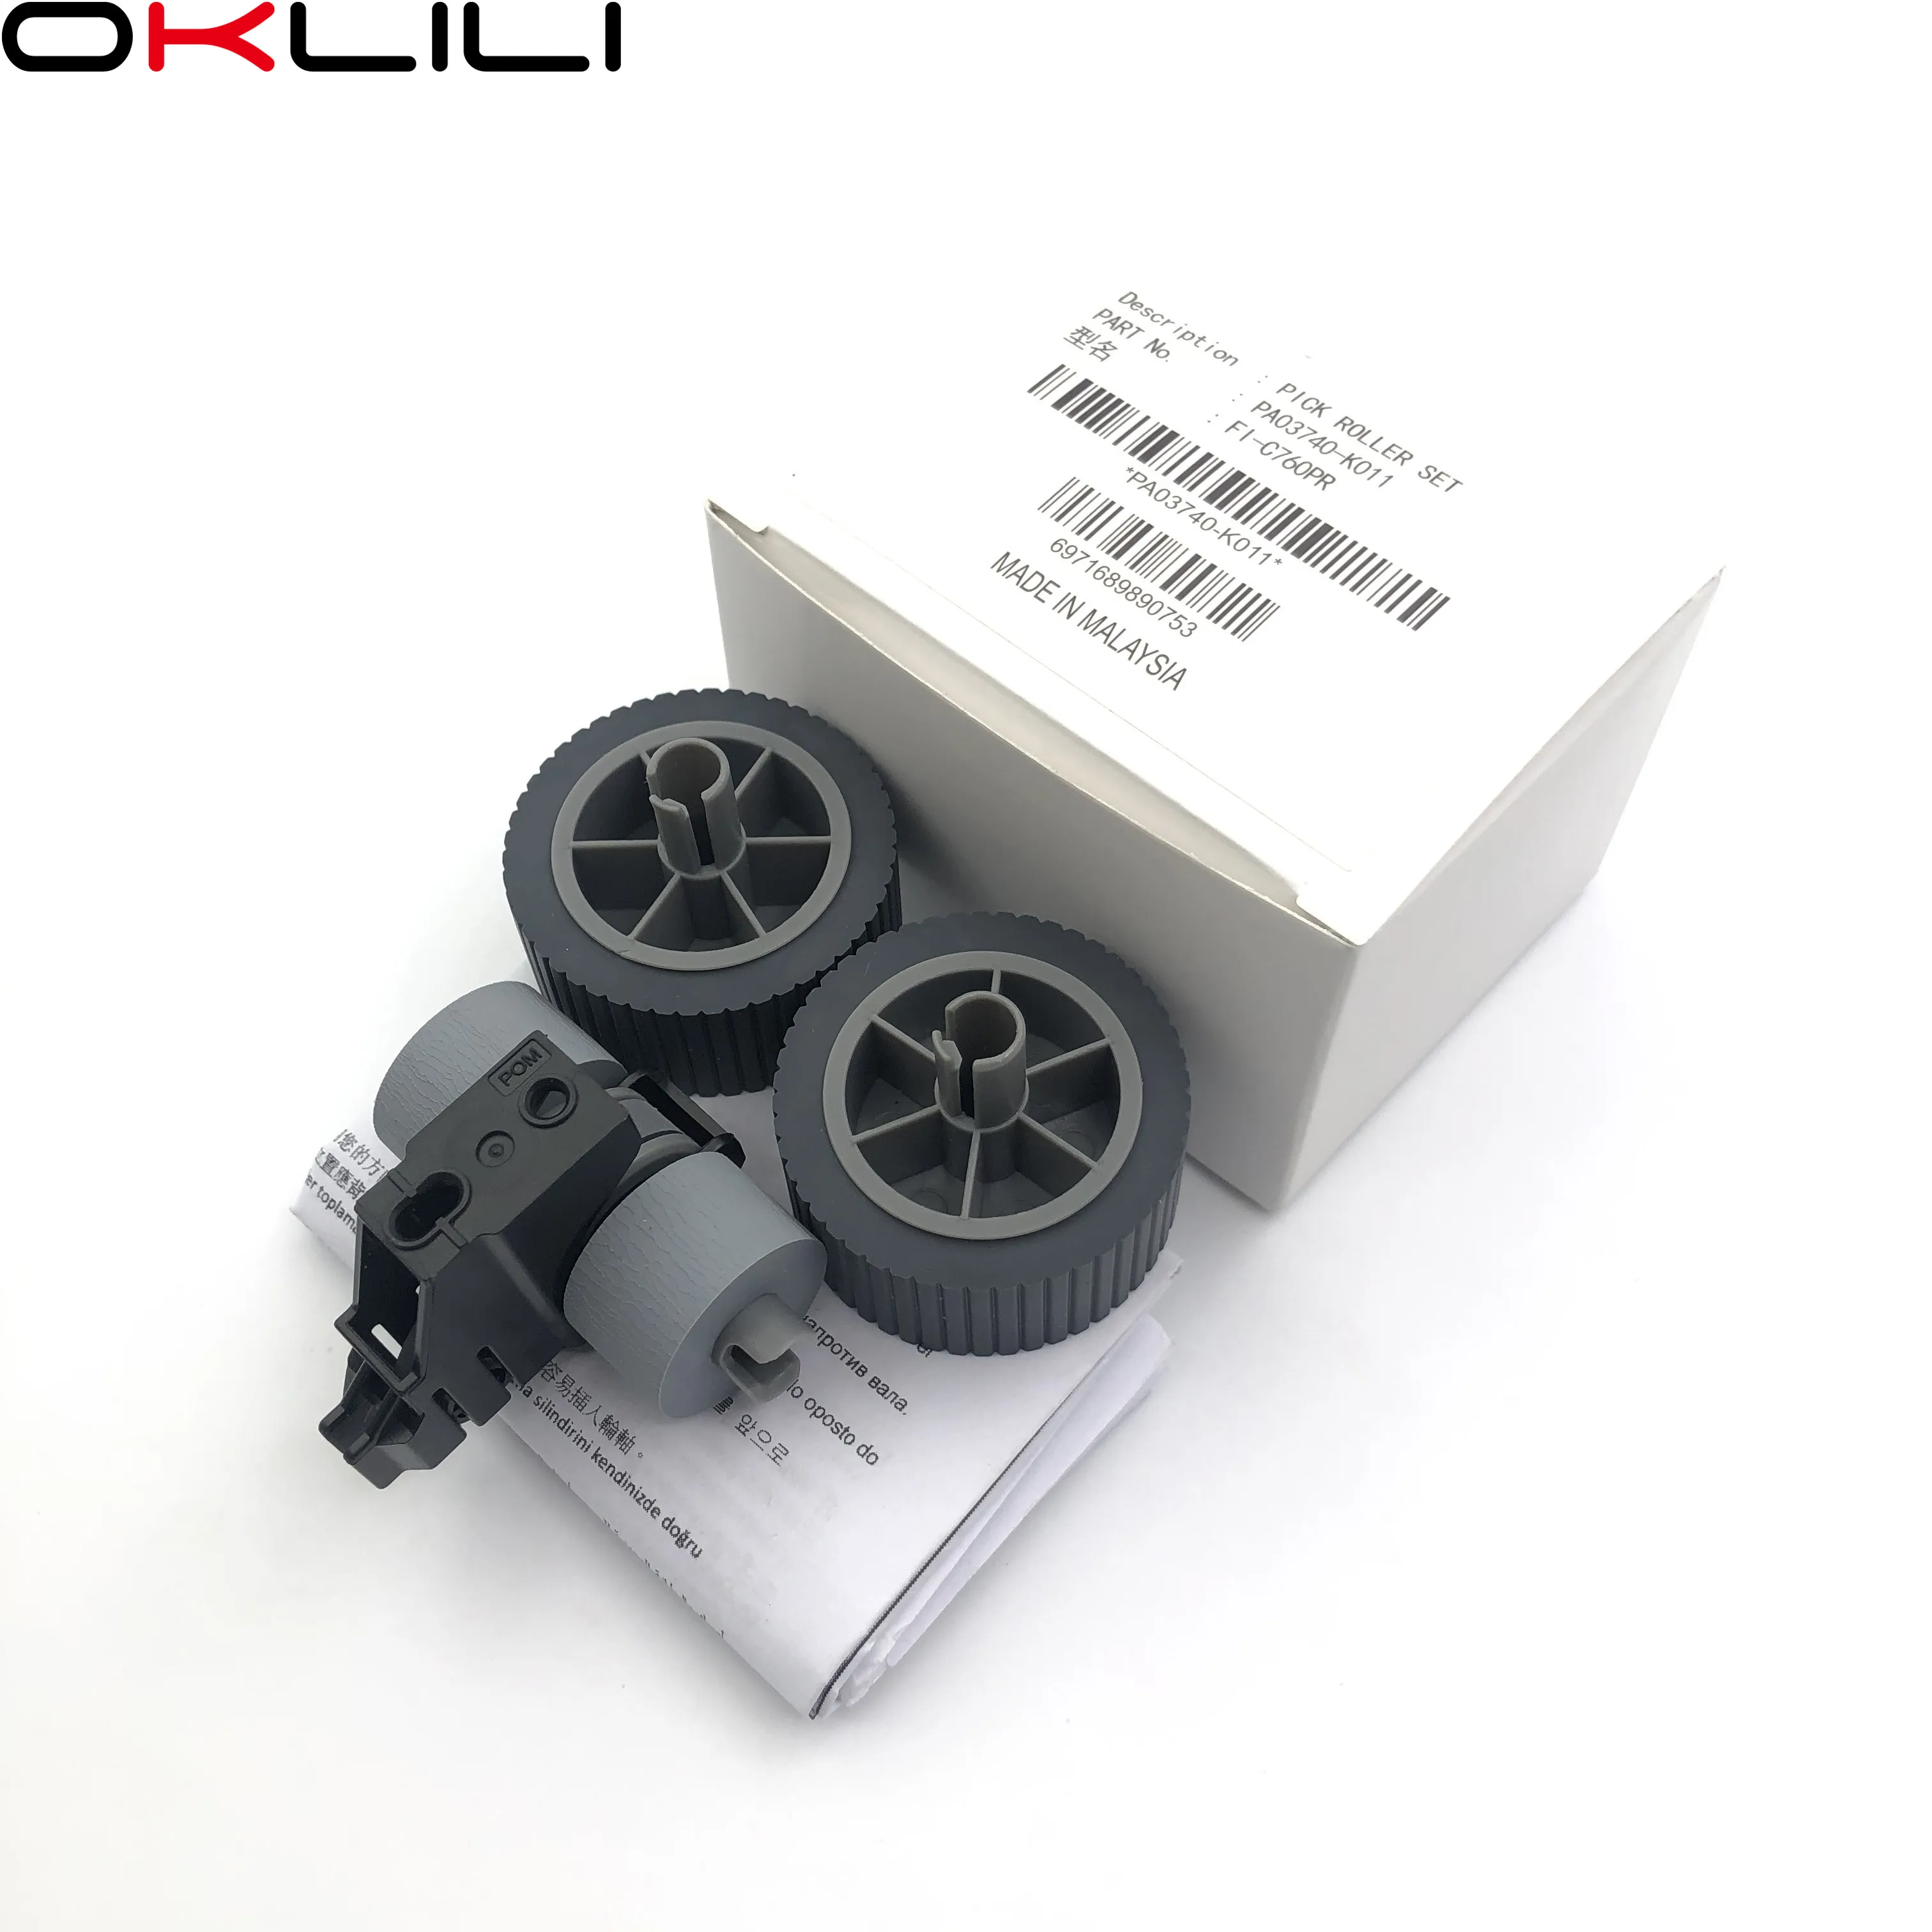 1SETX PA03740-K010 PA03740-K011 potrošni Kit Pick roller + Zavorni valj Pickup Ločitev za Fujitsu fi-7600 fi-7700 fi-7700S